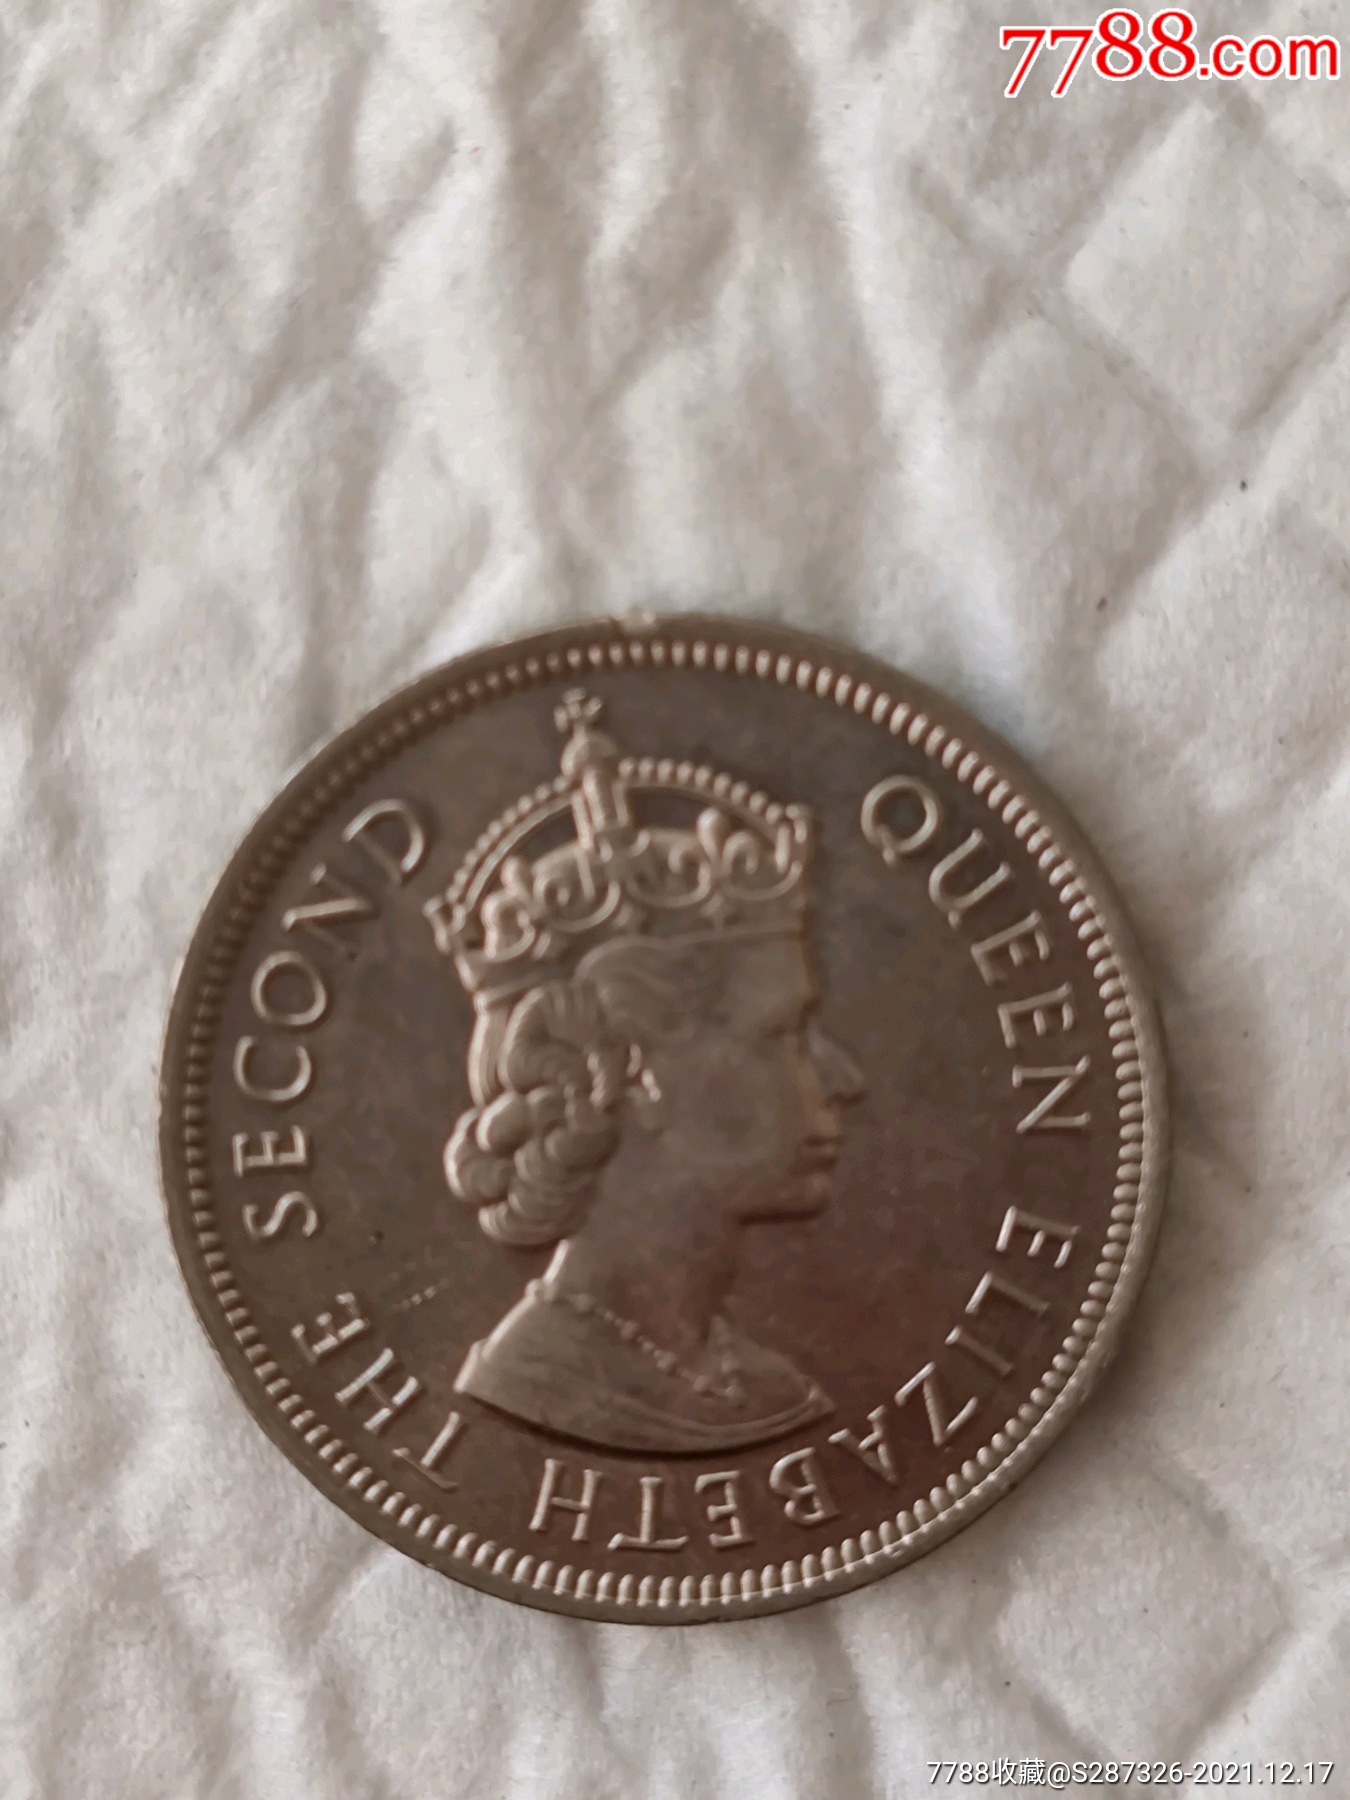 英国女王头像硬币早期香港硬币壹圆通走包邮